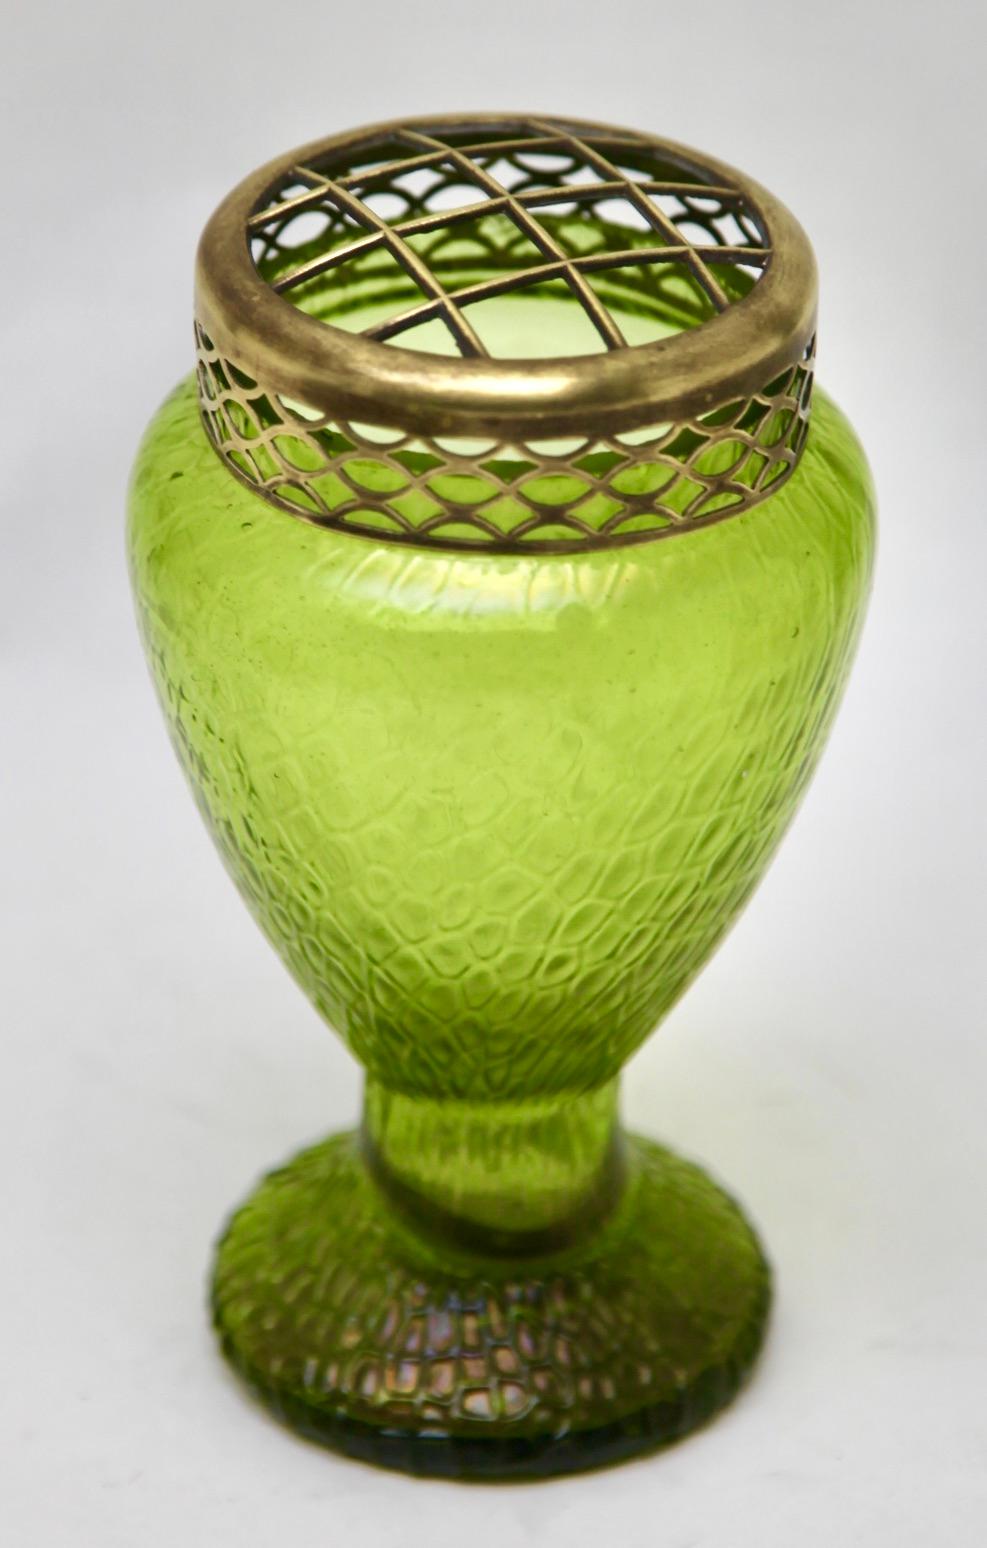 Czech Art Nouveau Green iridescent glass Pique Fleurs' vase by Loetz' with Grille For Sale